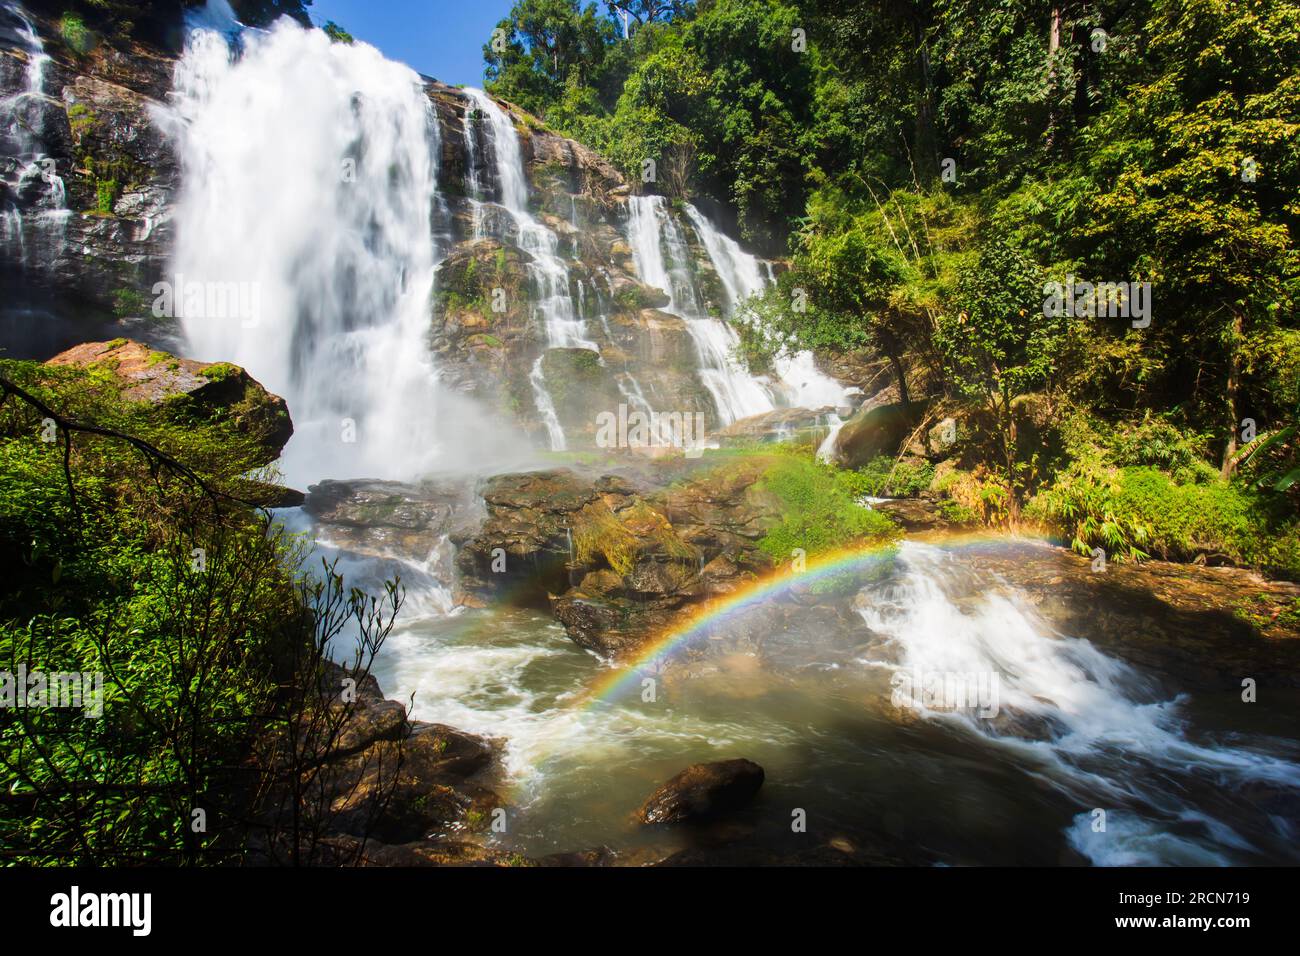 Un arcobaleno colorato di fronte a una cascata in una giornata di pioggia. Il Parco Nazionale Doi Inthanon è un'attrazione turistica a Chiang mai, Thailandia. Foto Stock